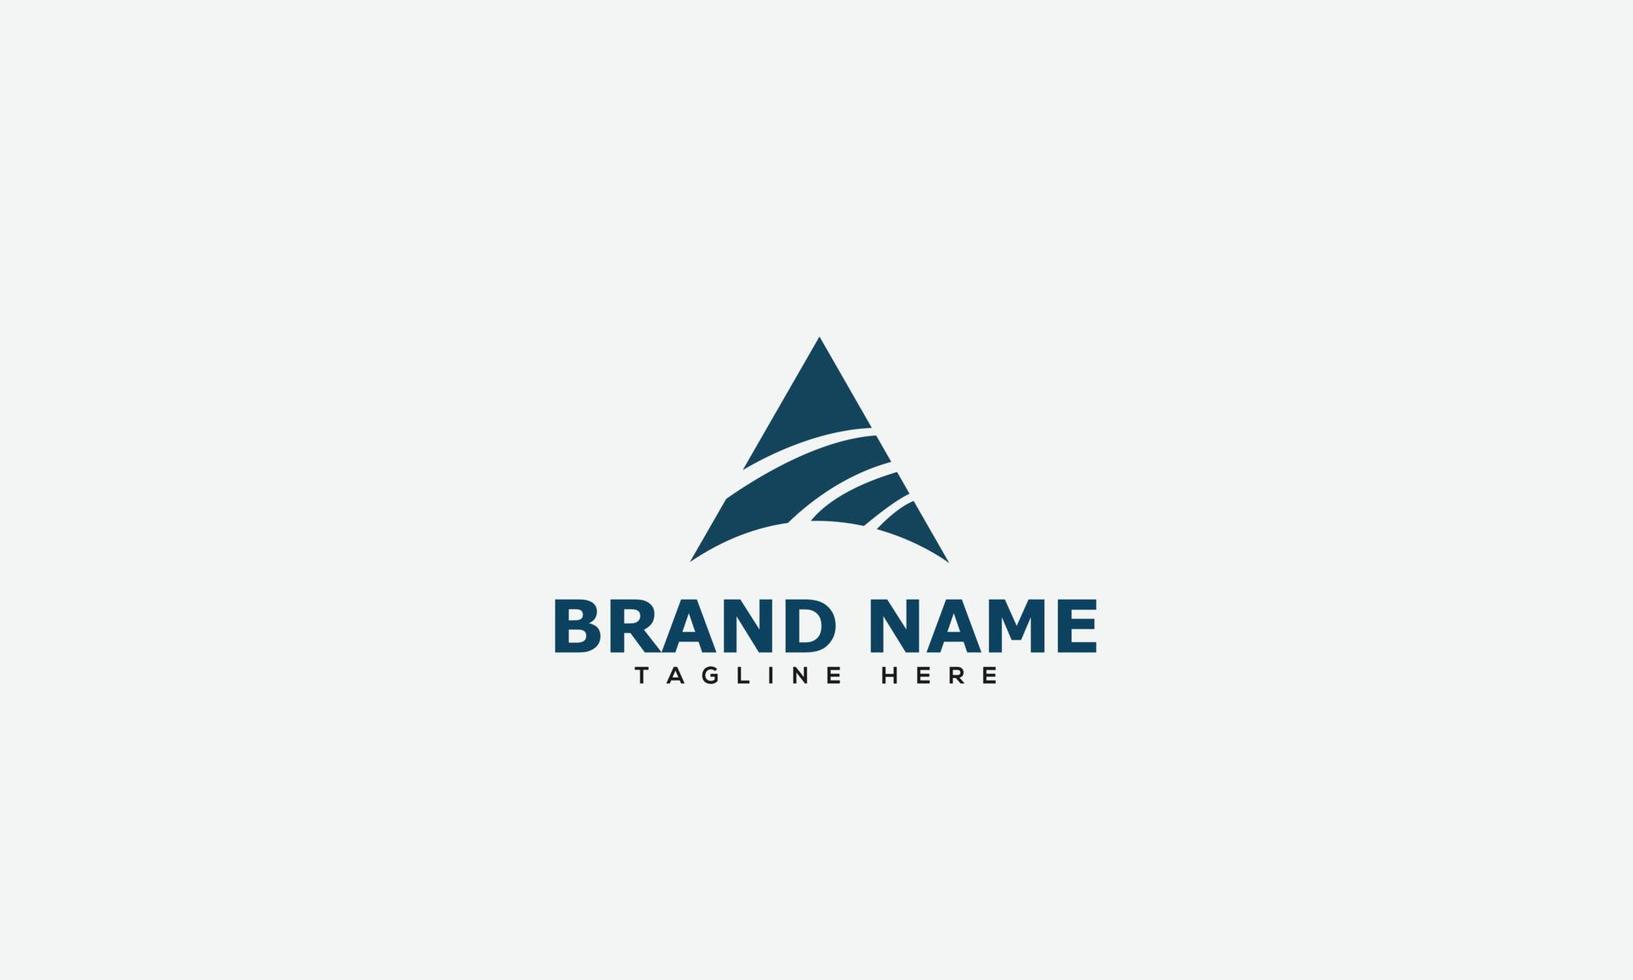 un elemento di branding grafico vettoriale del modello di progettazione del logo.